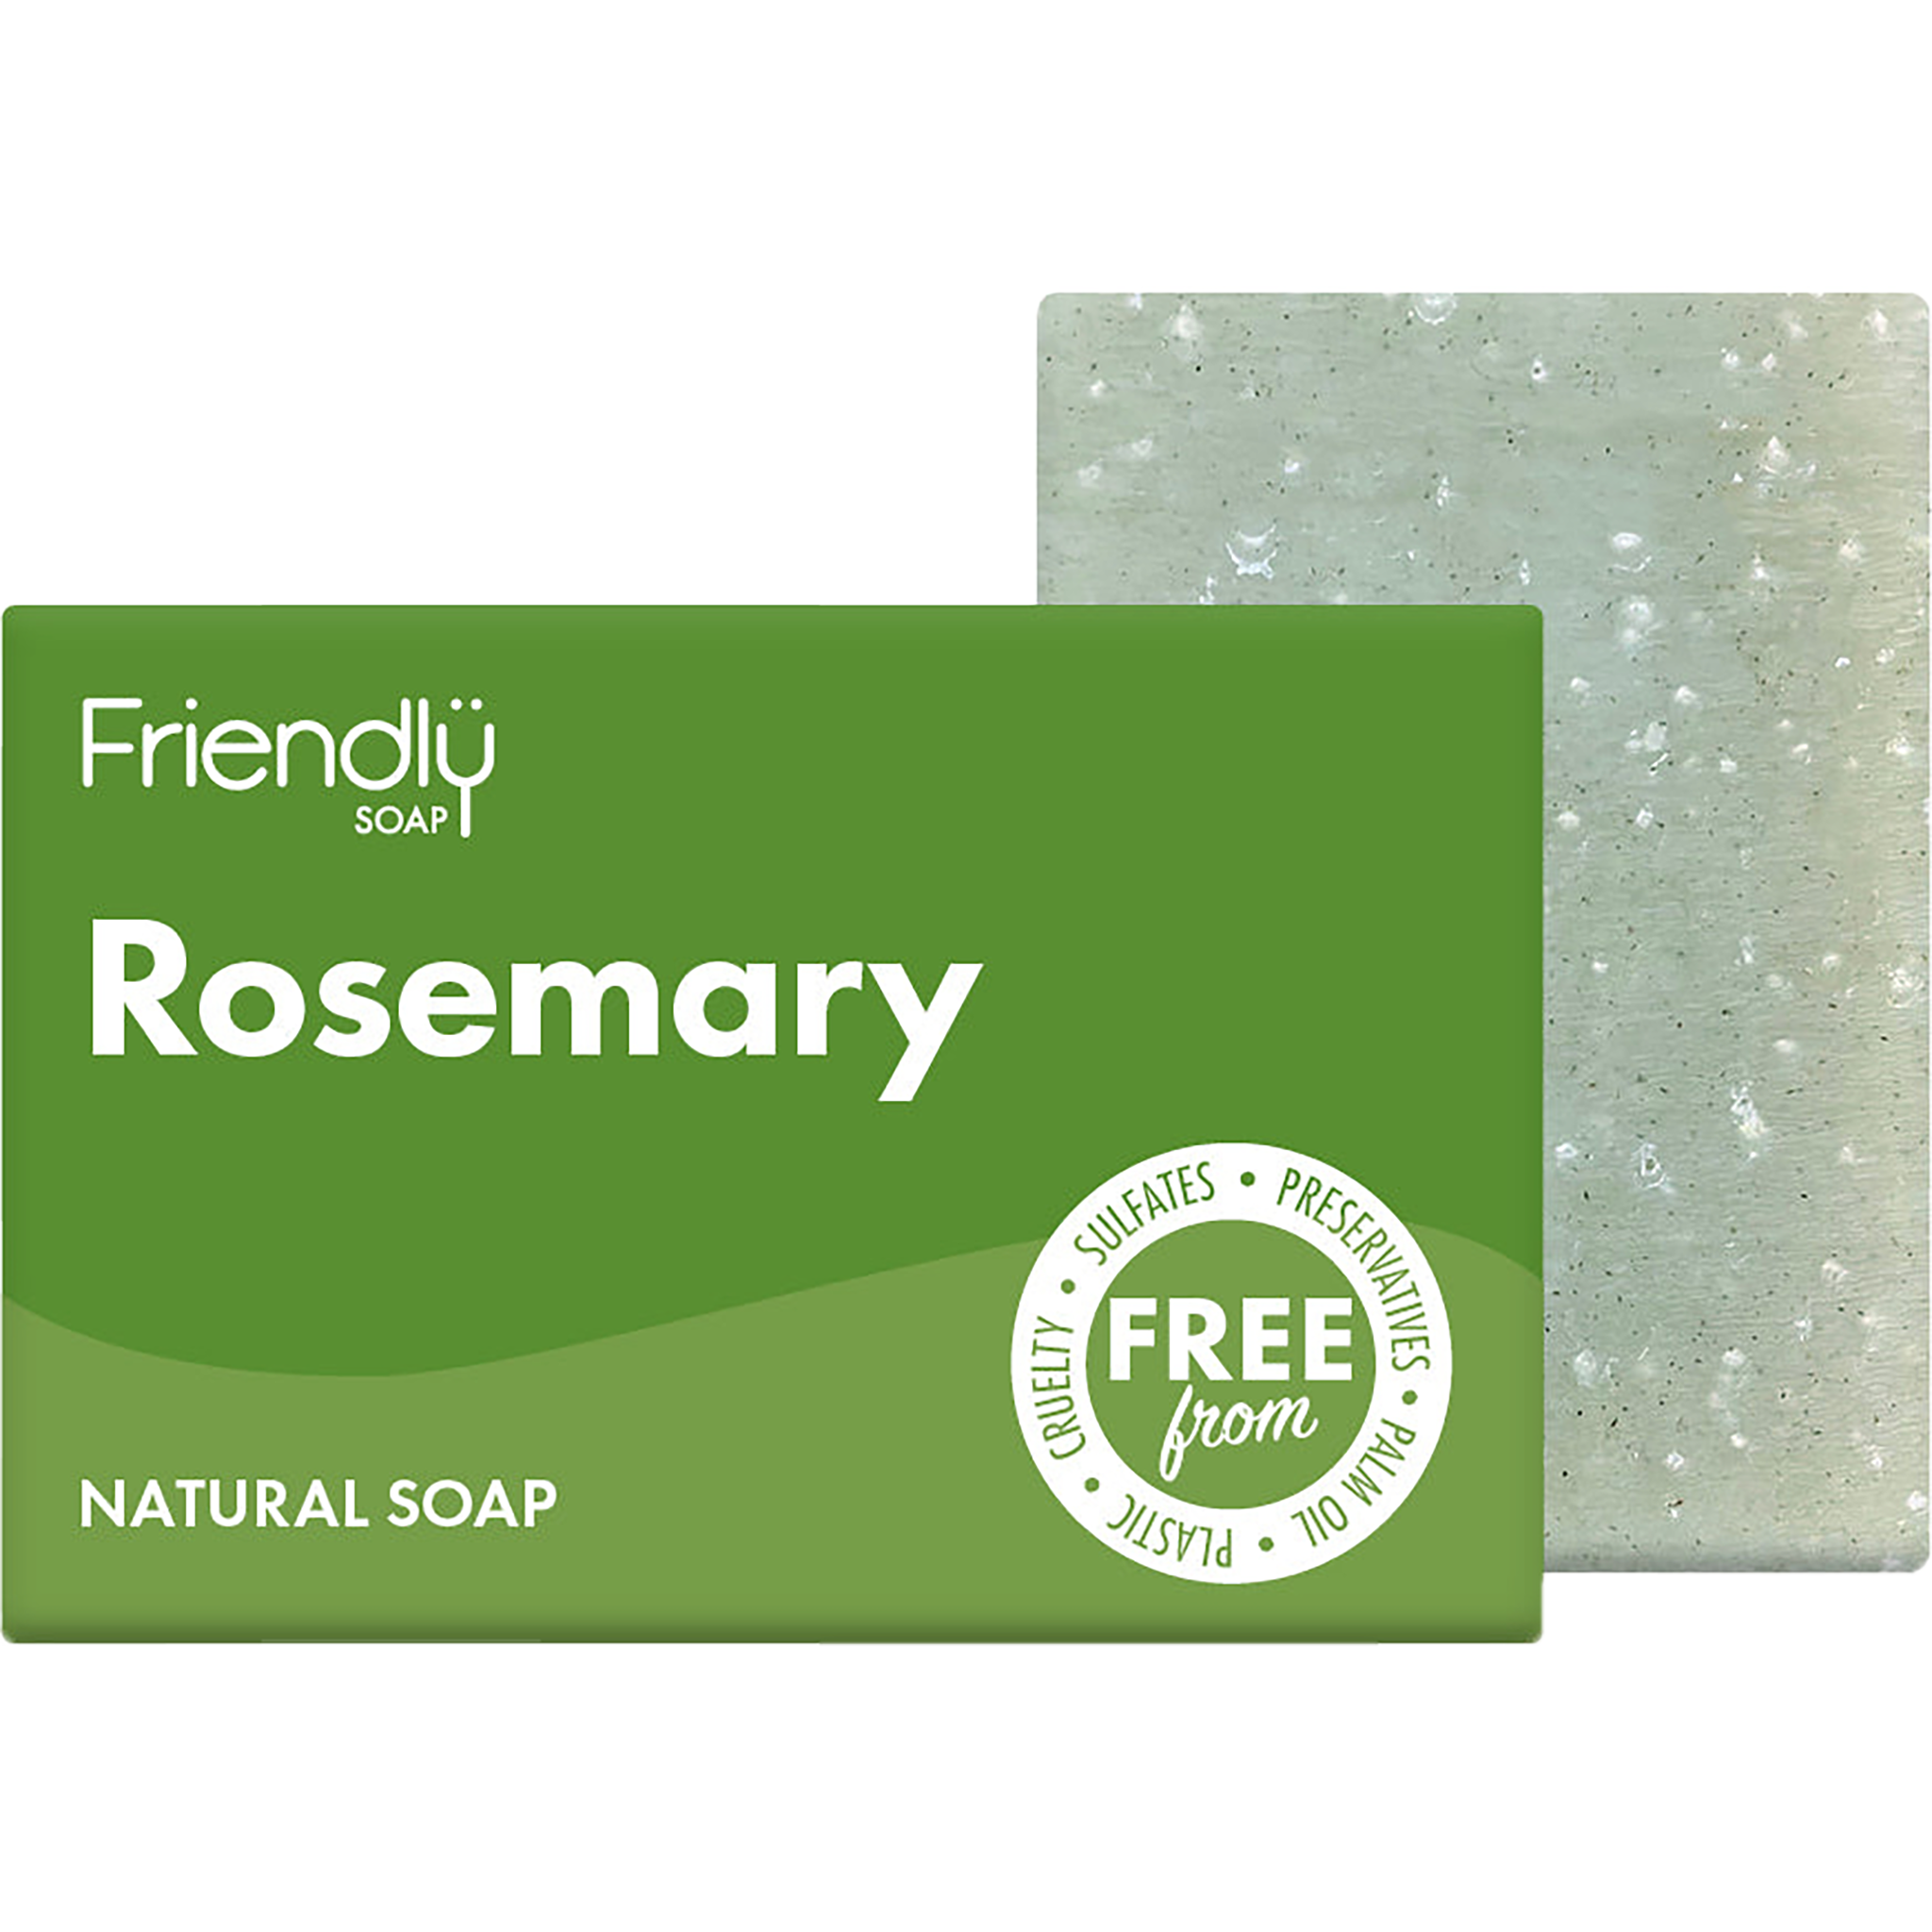 Rosemary Soap Bar